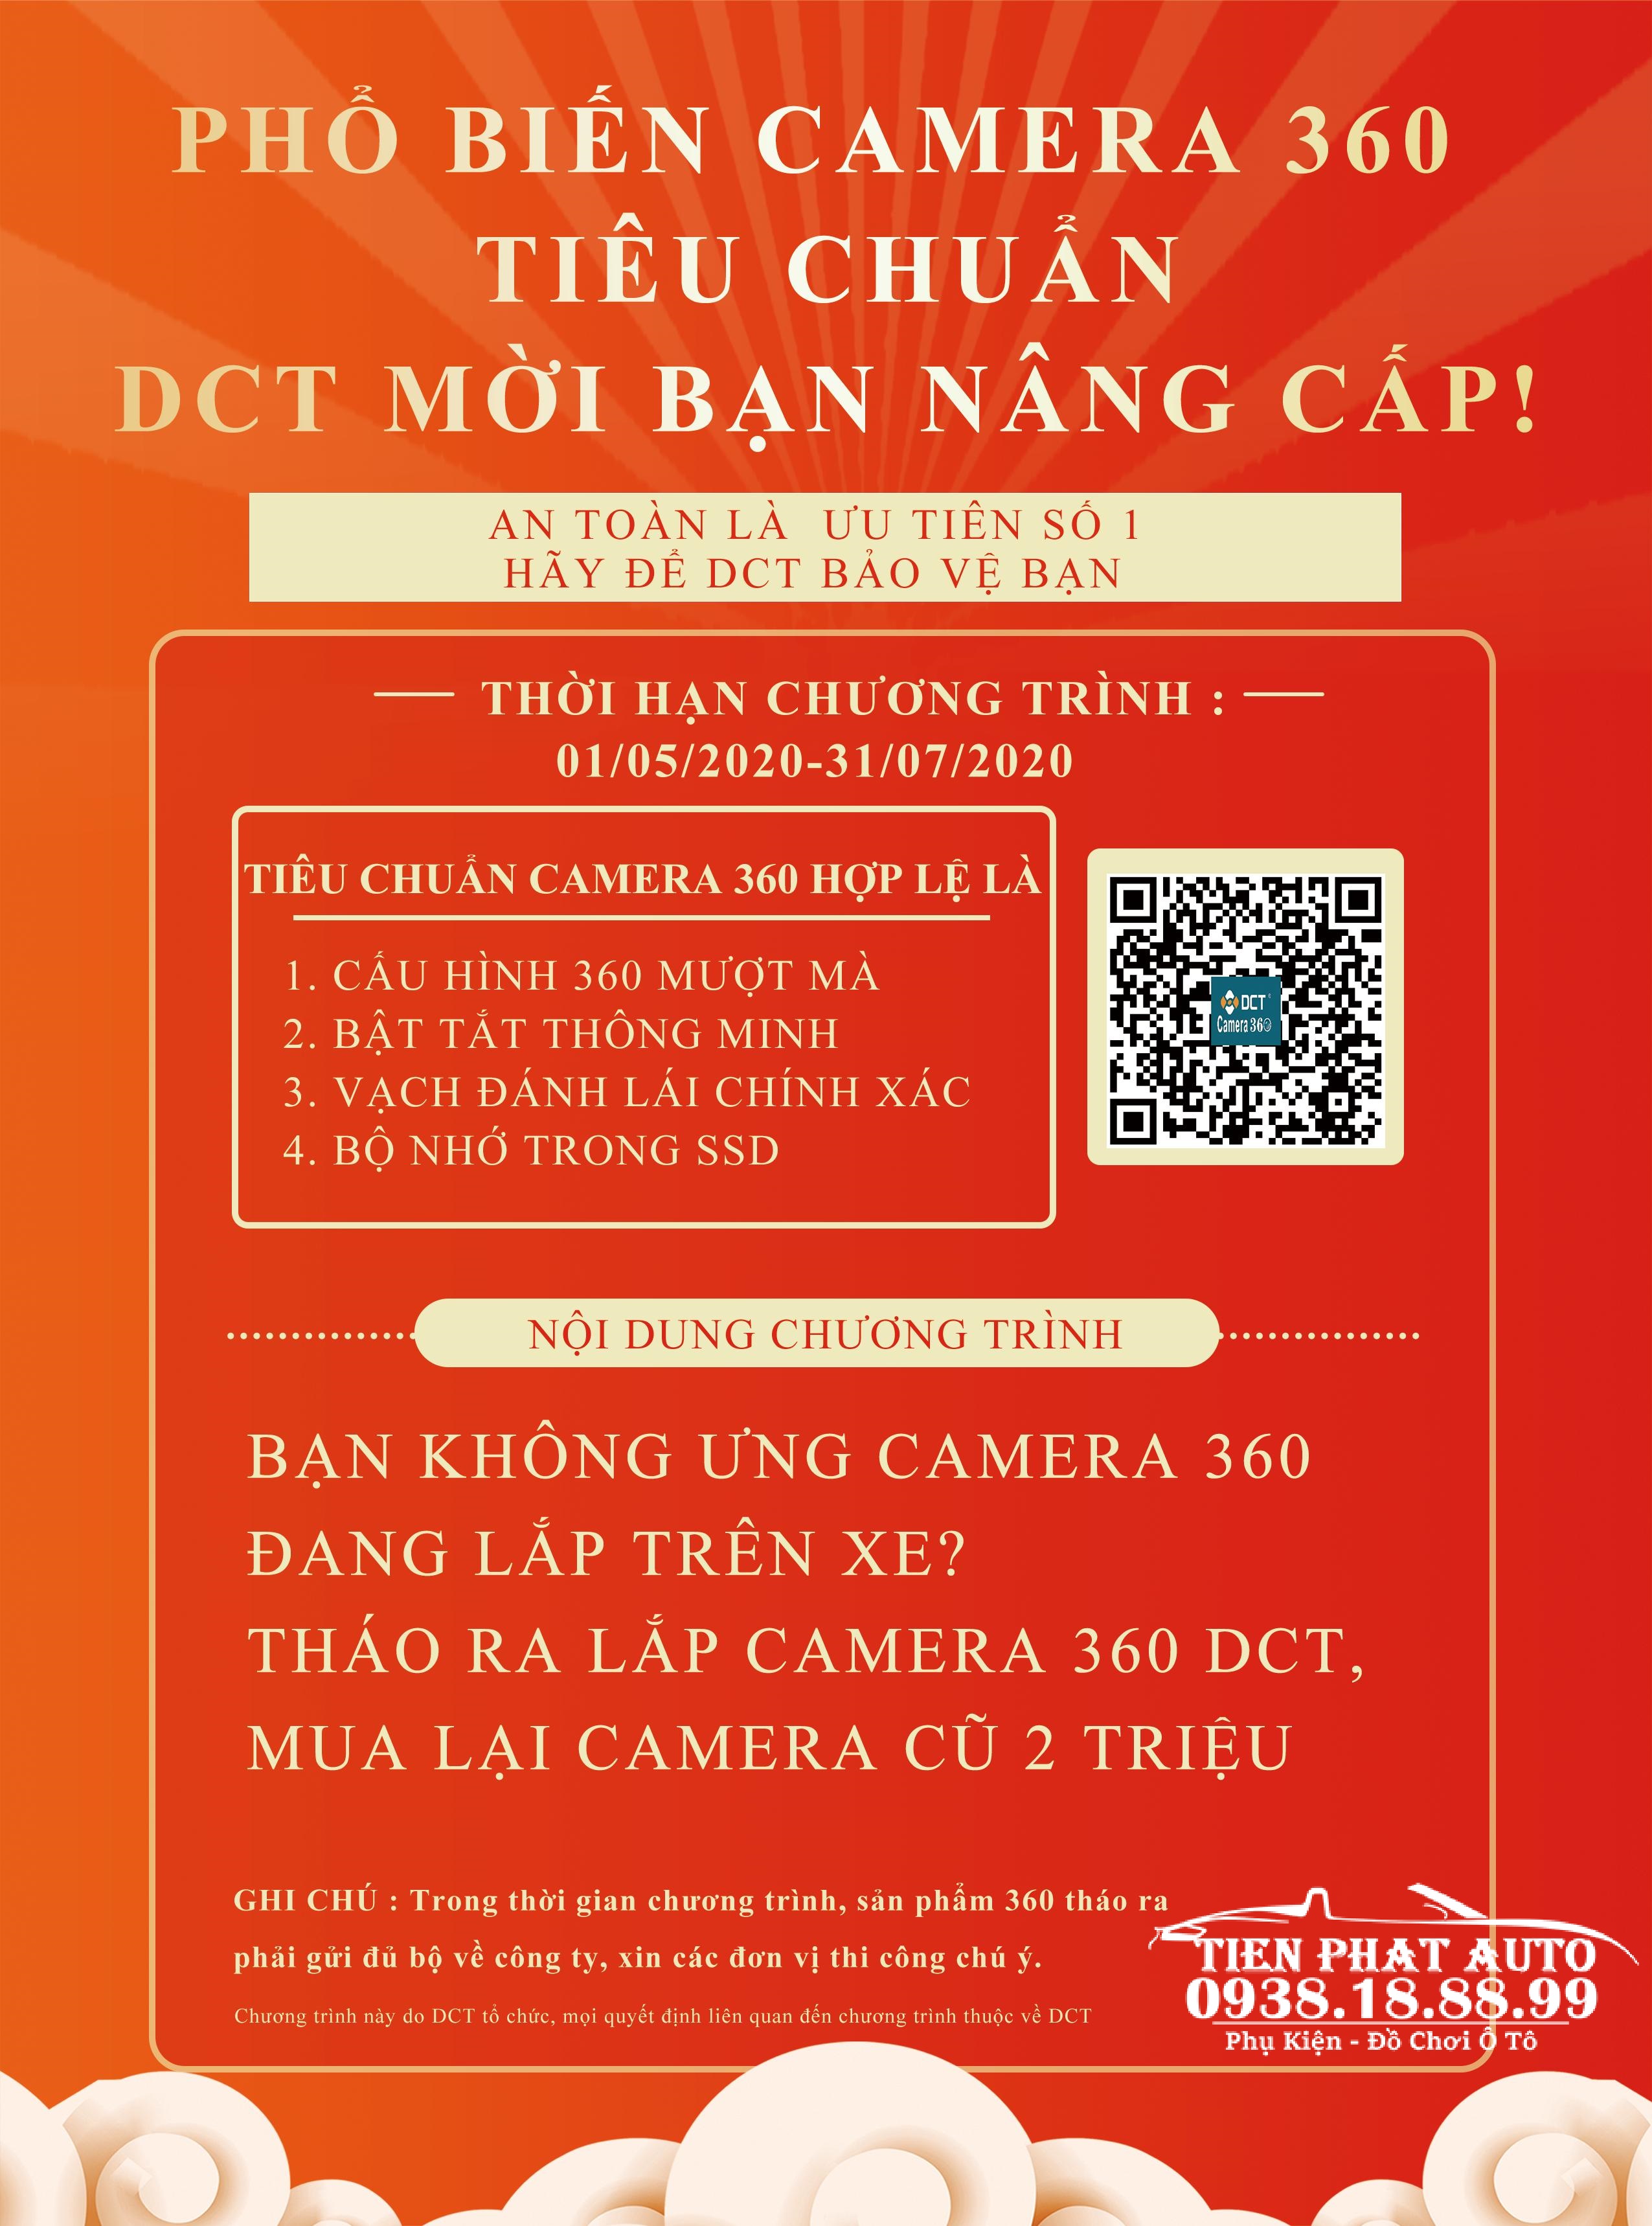 Nâng Cấp Camera 360 DCT Nhận Ngay 2 Triệu Đồng